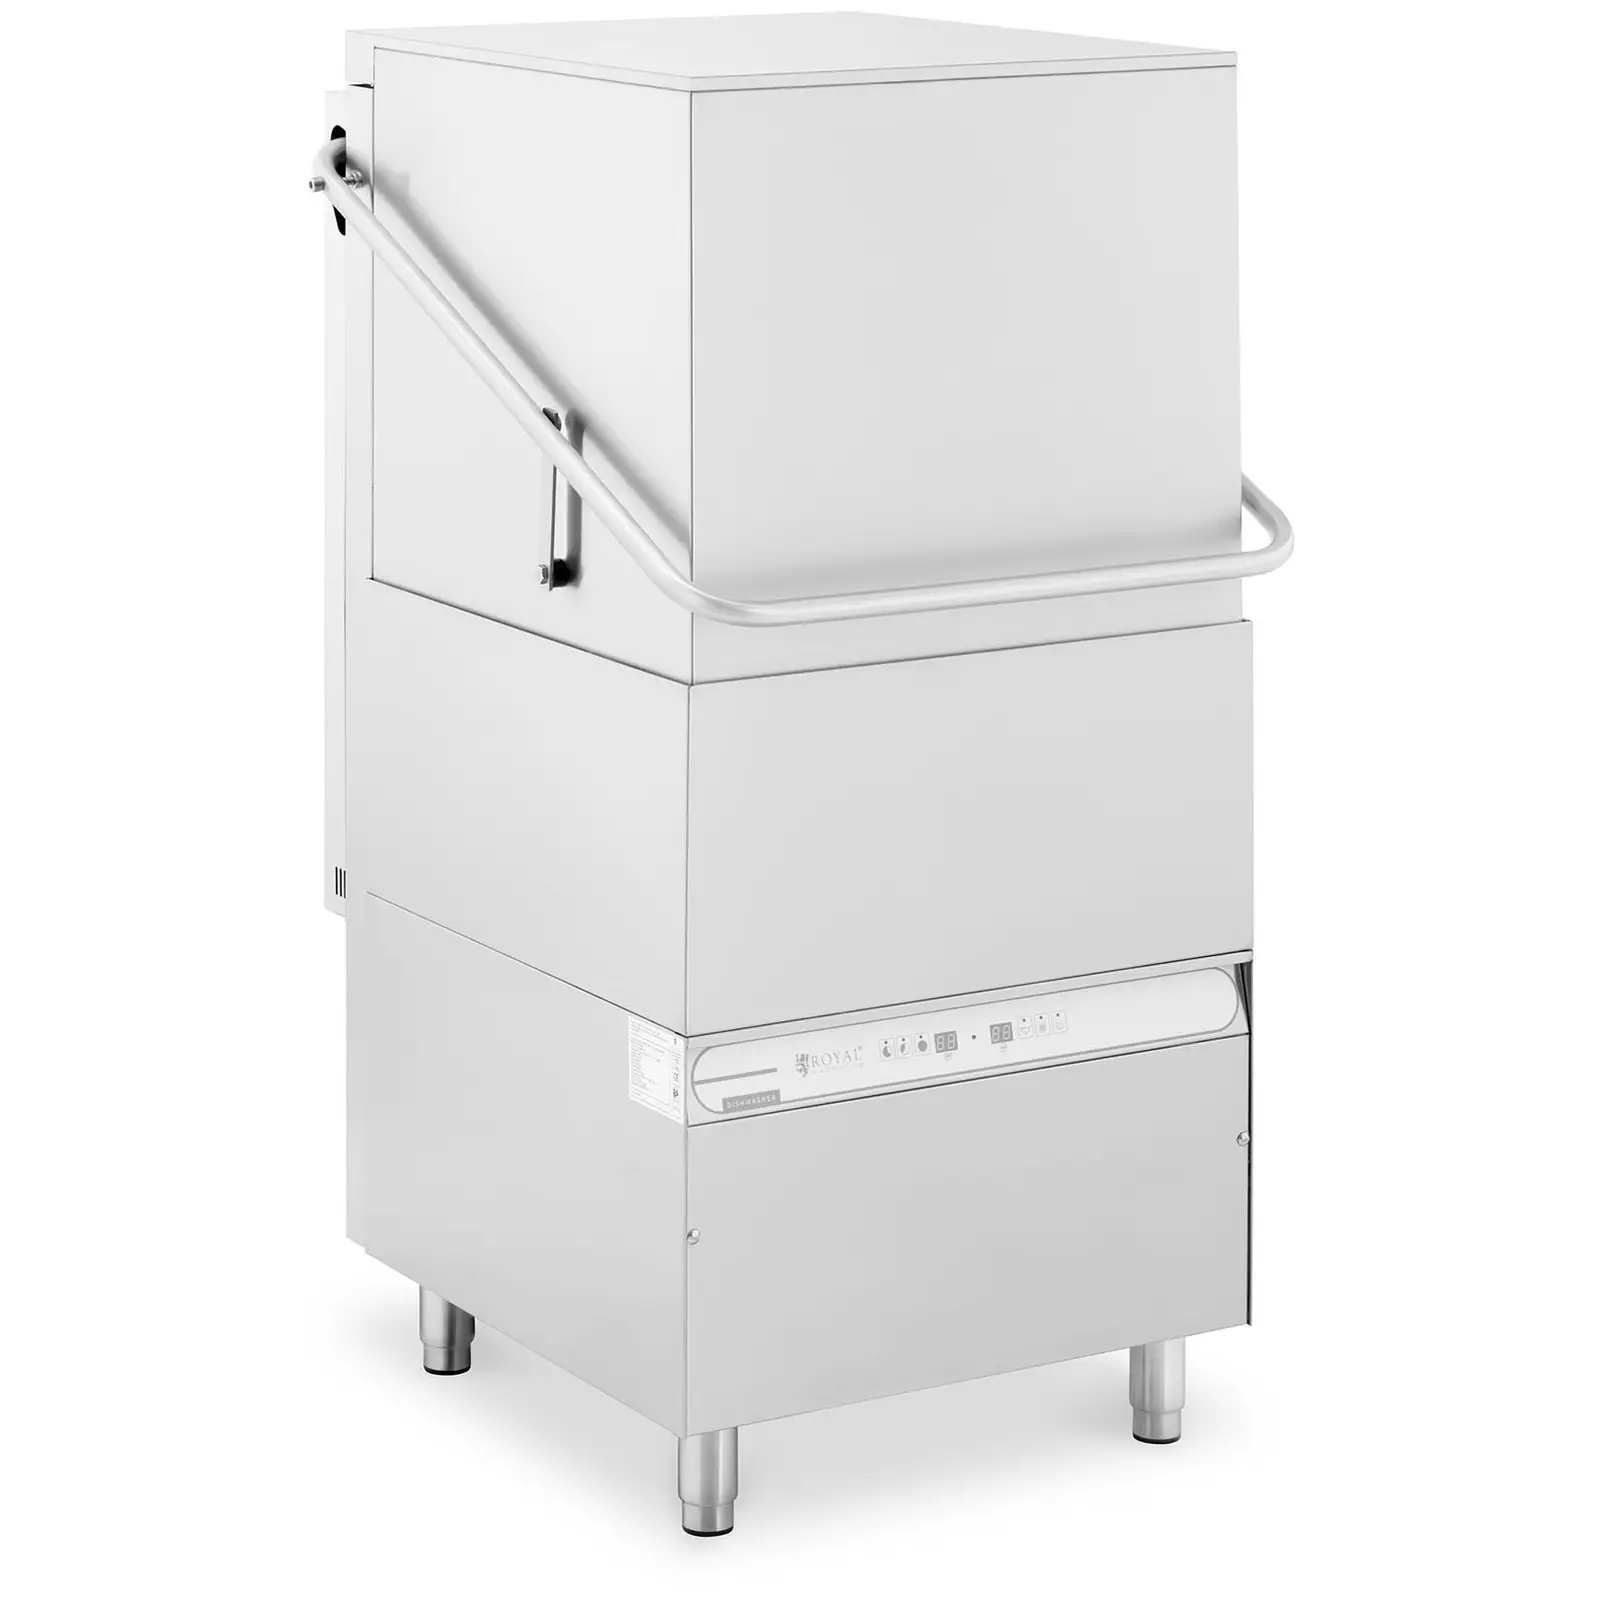 Ipari mosogatógép  - 8600 W - Royal Catering - akár 60 mosogatási ciklus/óra